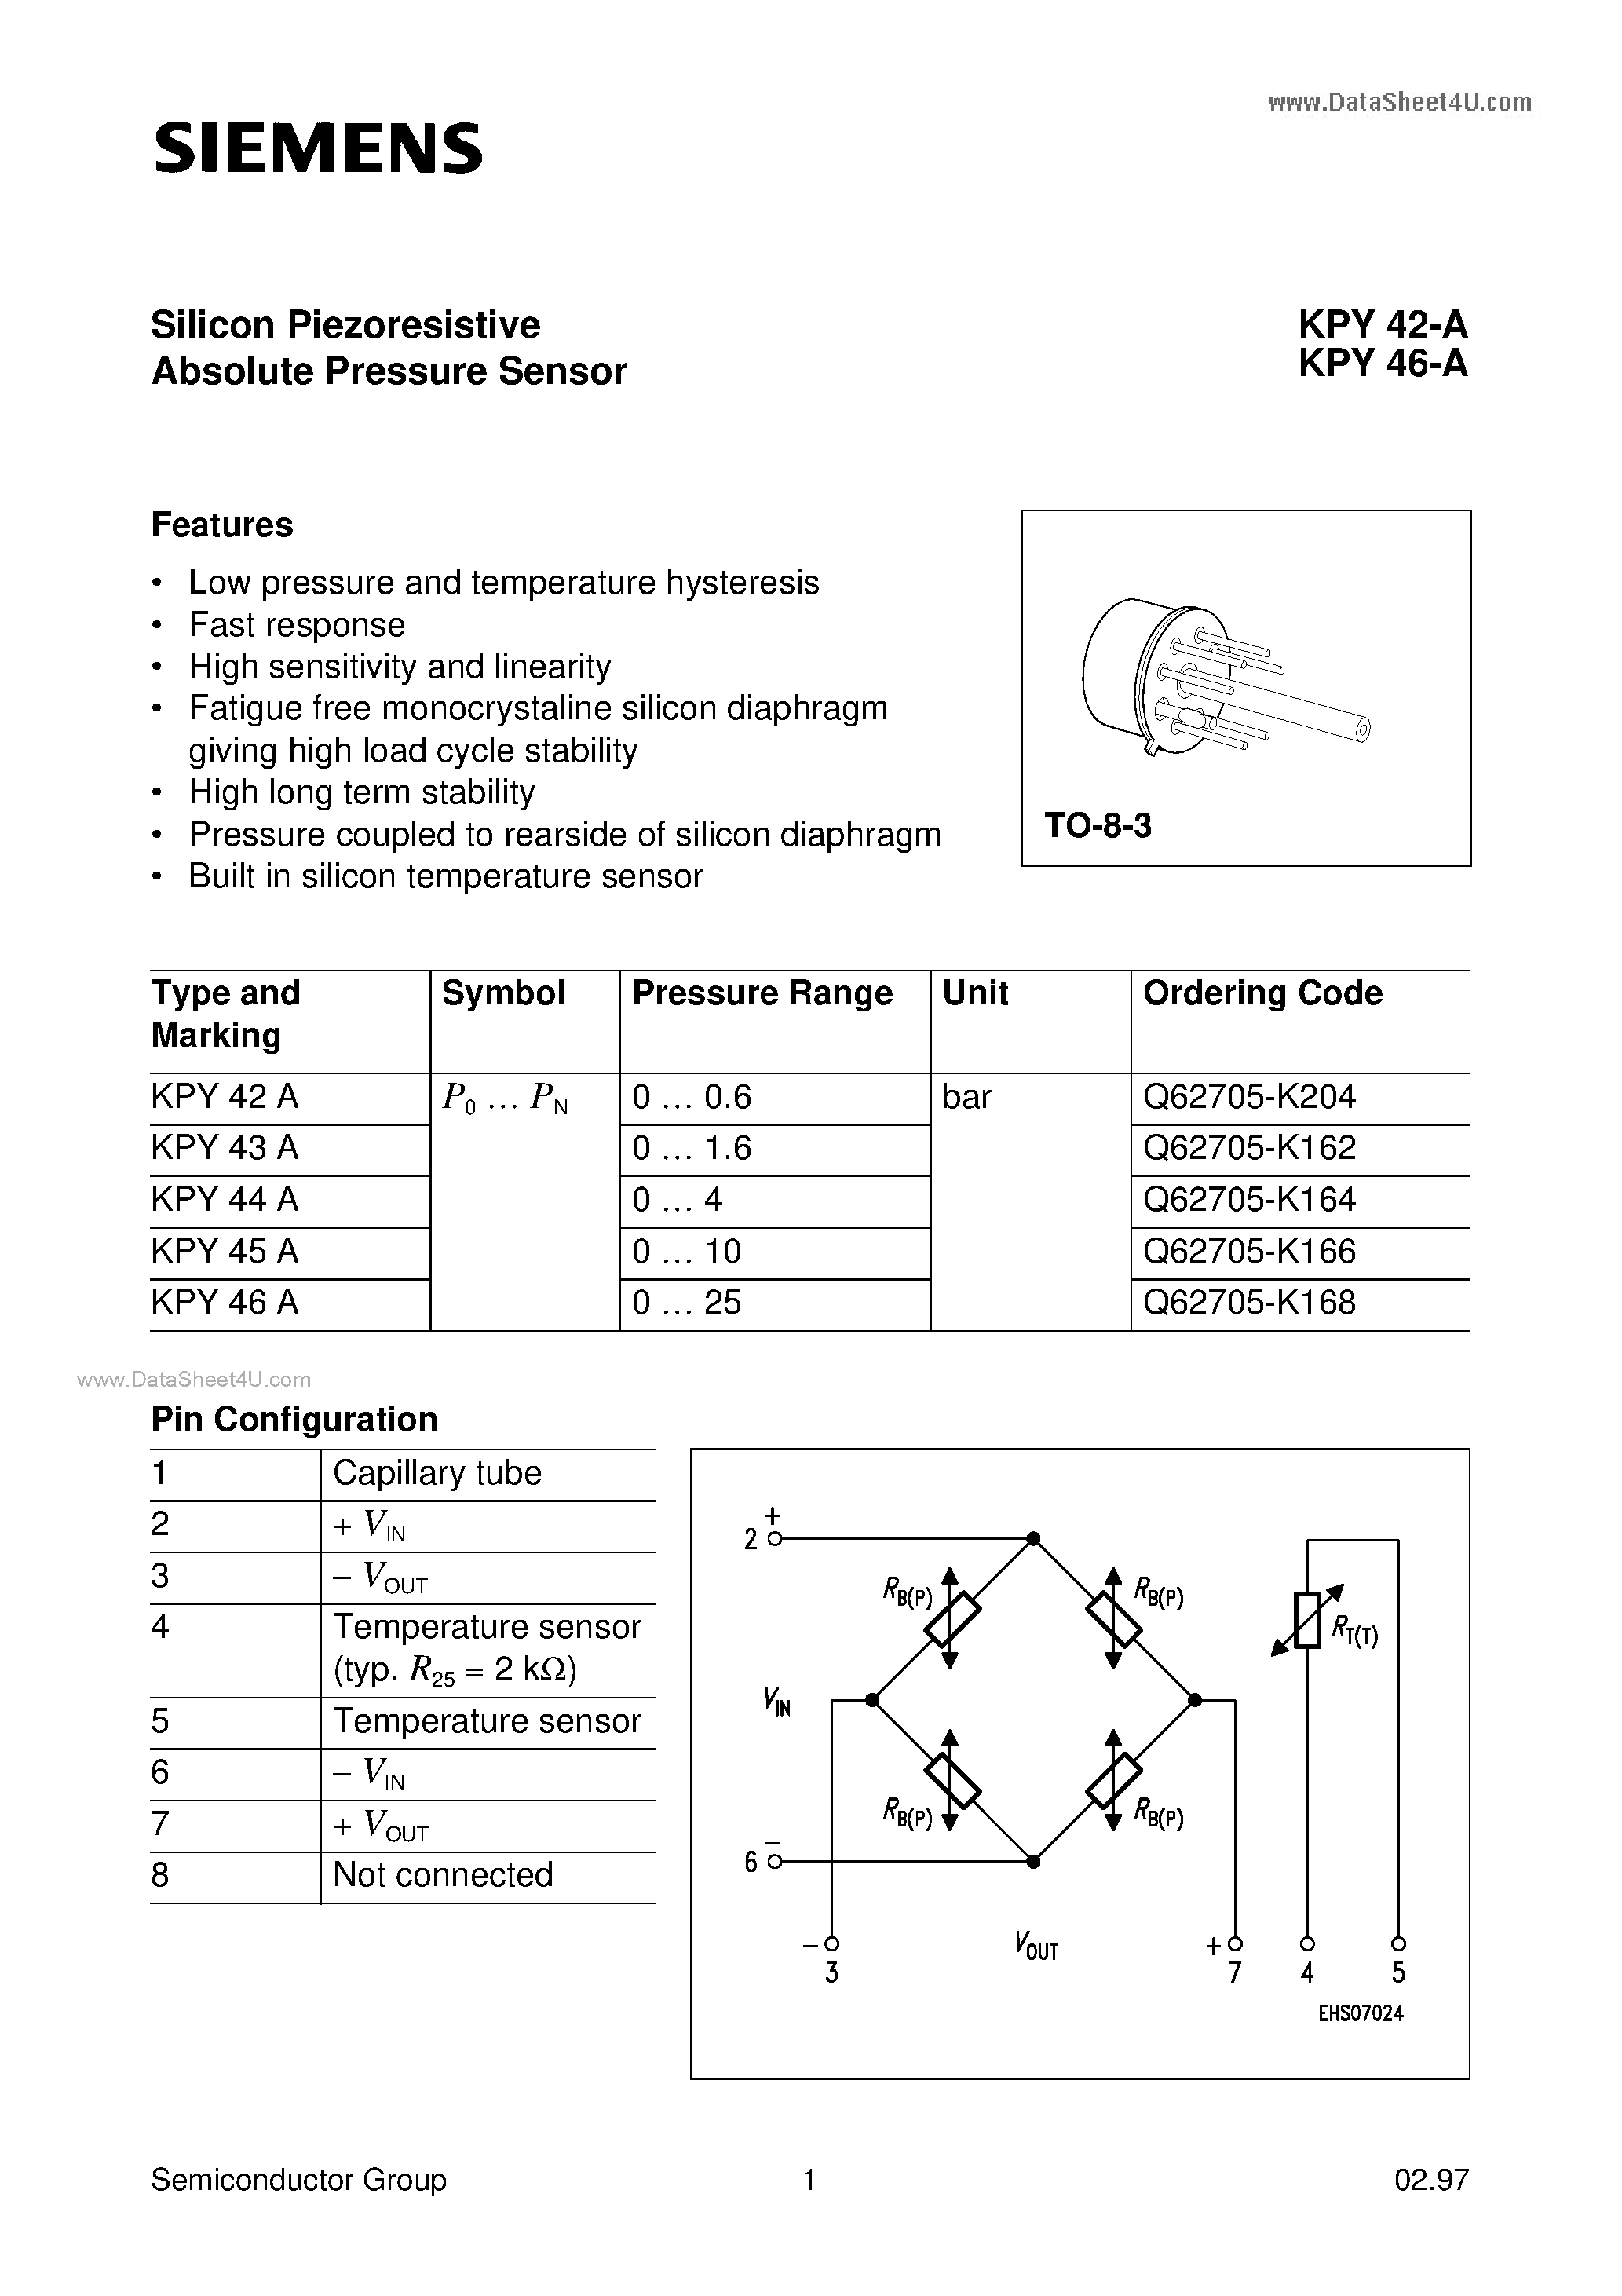 Даташит KPY42-A - (KPY42-A / KPY46-A) Silicon Piezoresistive Absolute Pressure Sensor страница 1